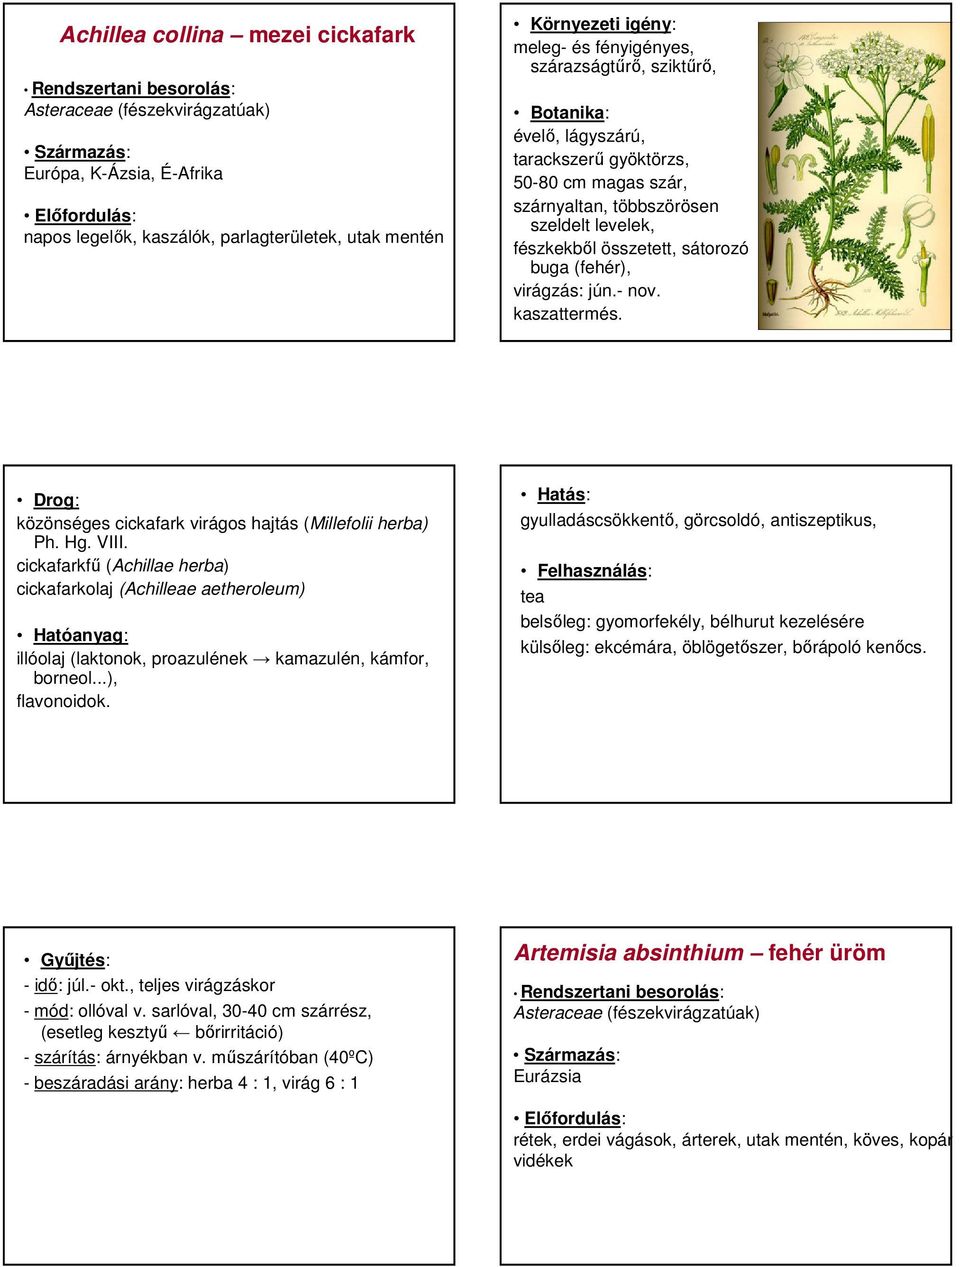 közönséges cickafark virágos hajtás (Millefolii herba) Ph. Hg. VIII. cickafarkfő (Achillae herba) cickafarkolaj (Achilleae aetheroleum) illóolaj (laktonok, proazulének kamazulén, kámfor, borneol.